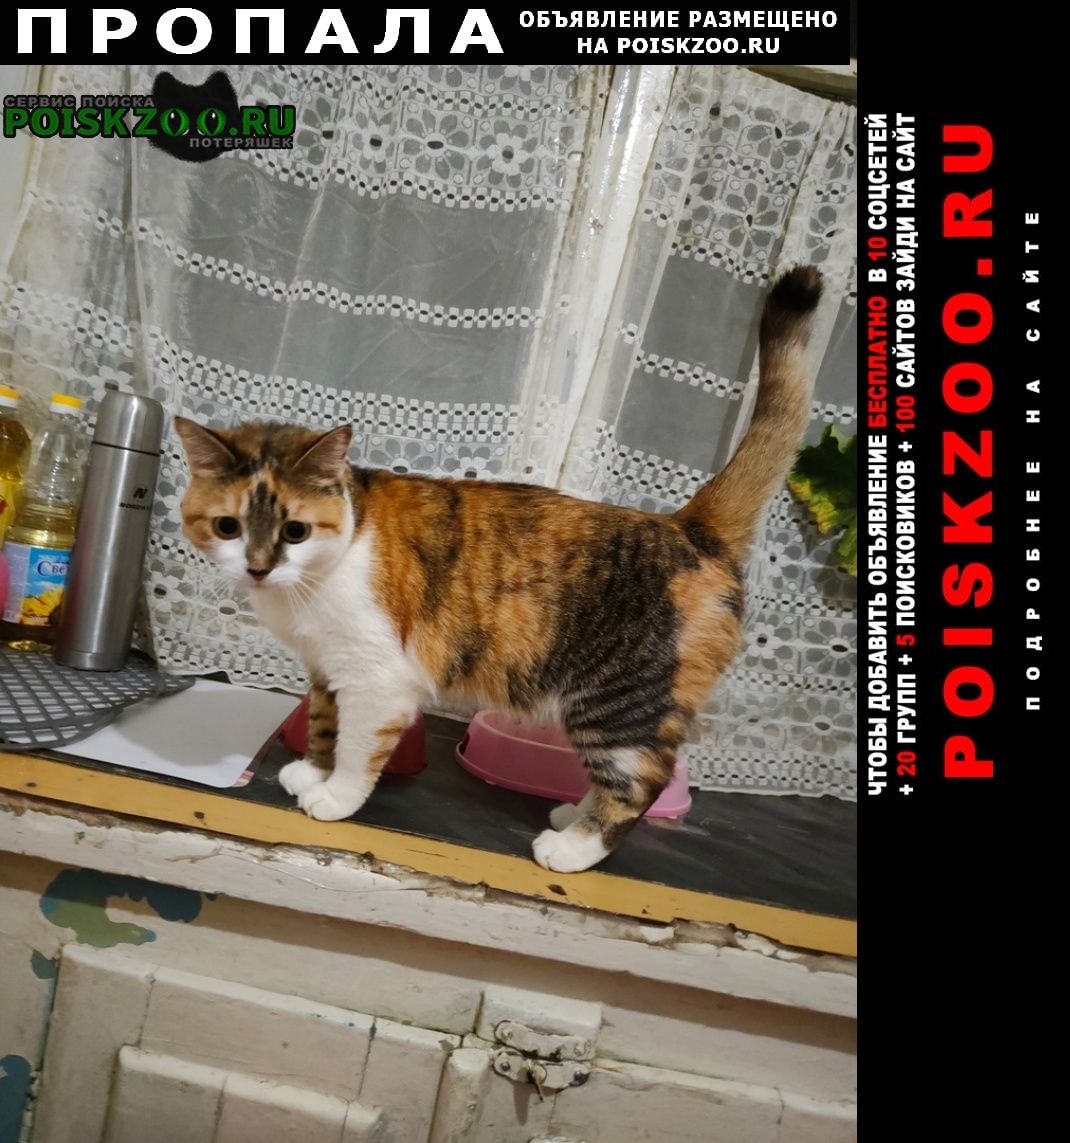 Хабаровск Пропала кошка в поселке горького, но могли увезти